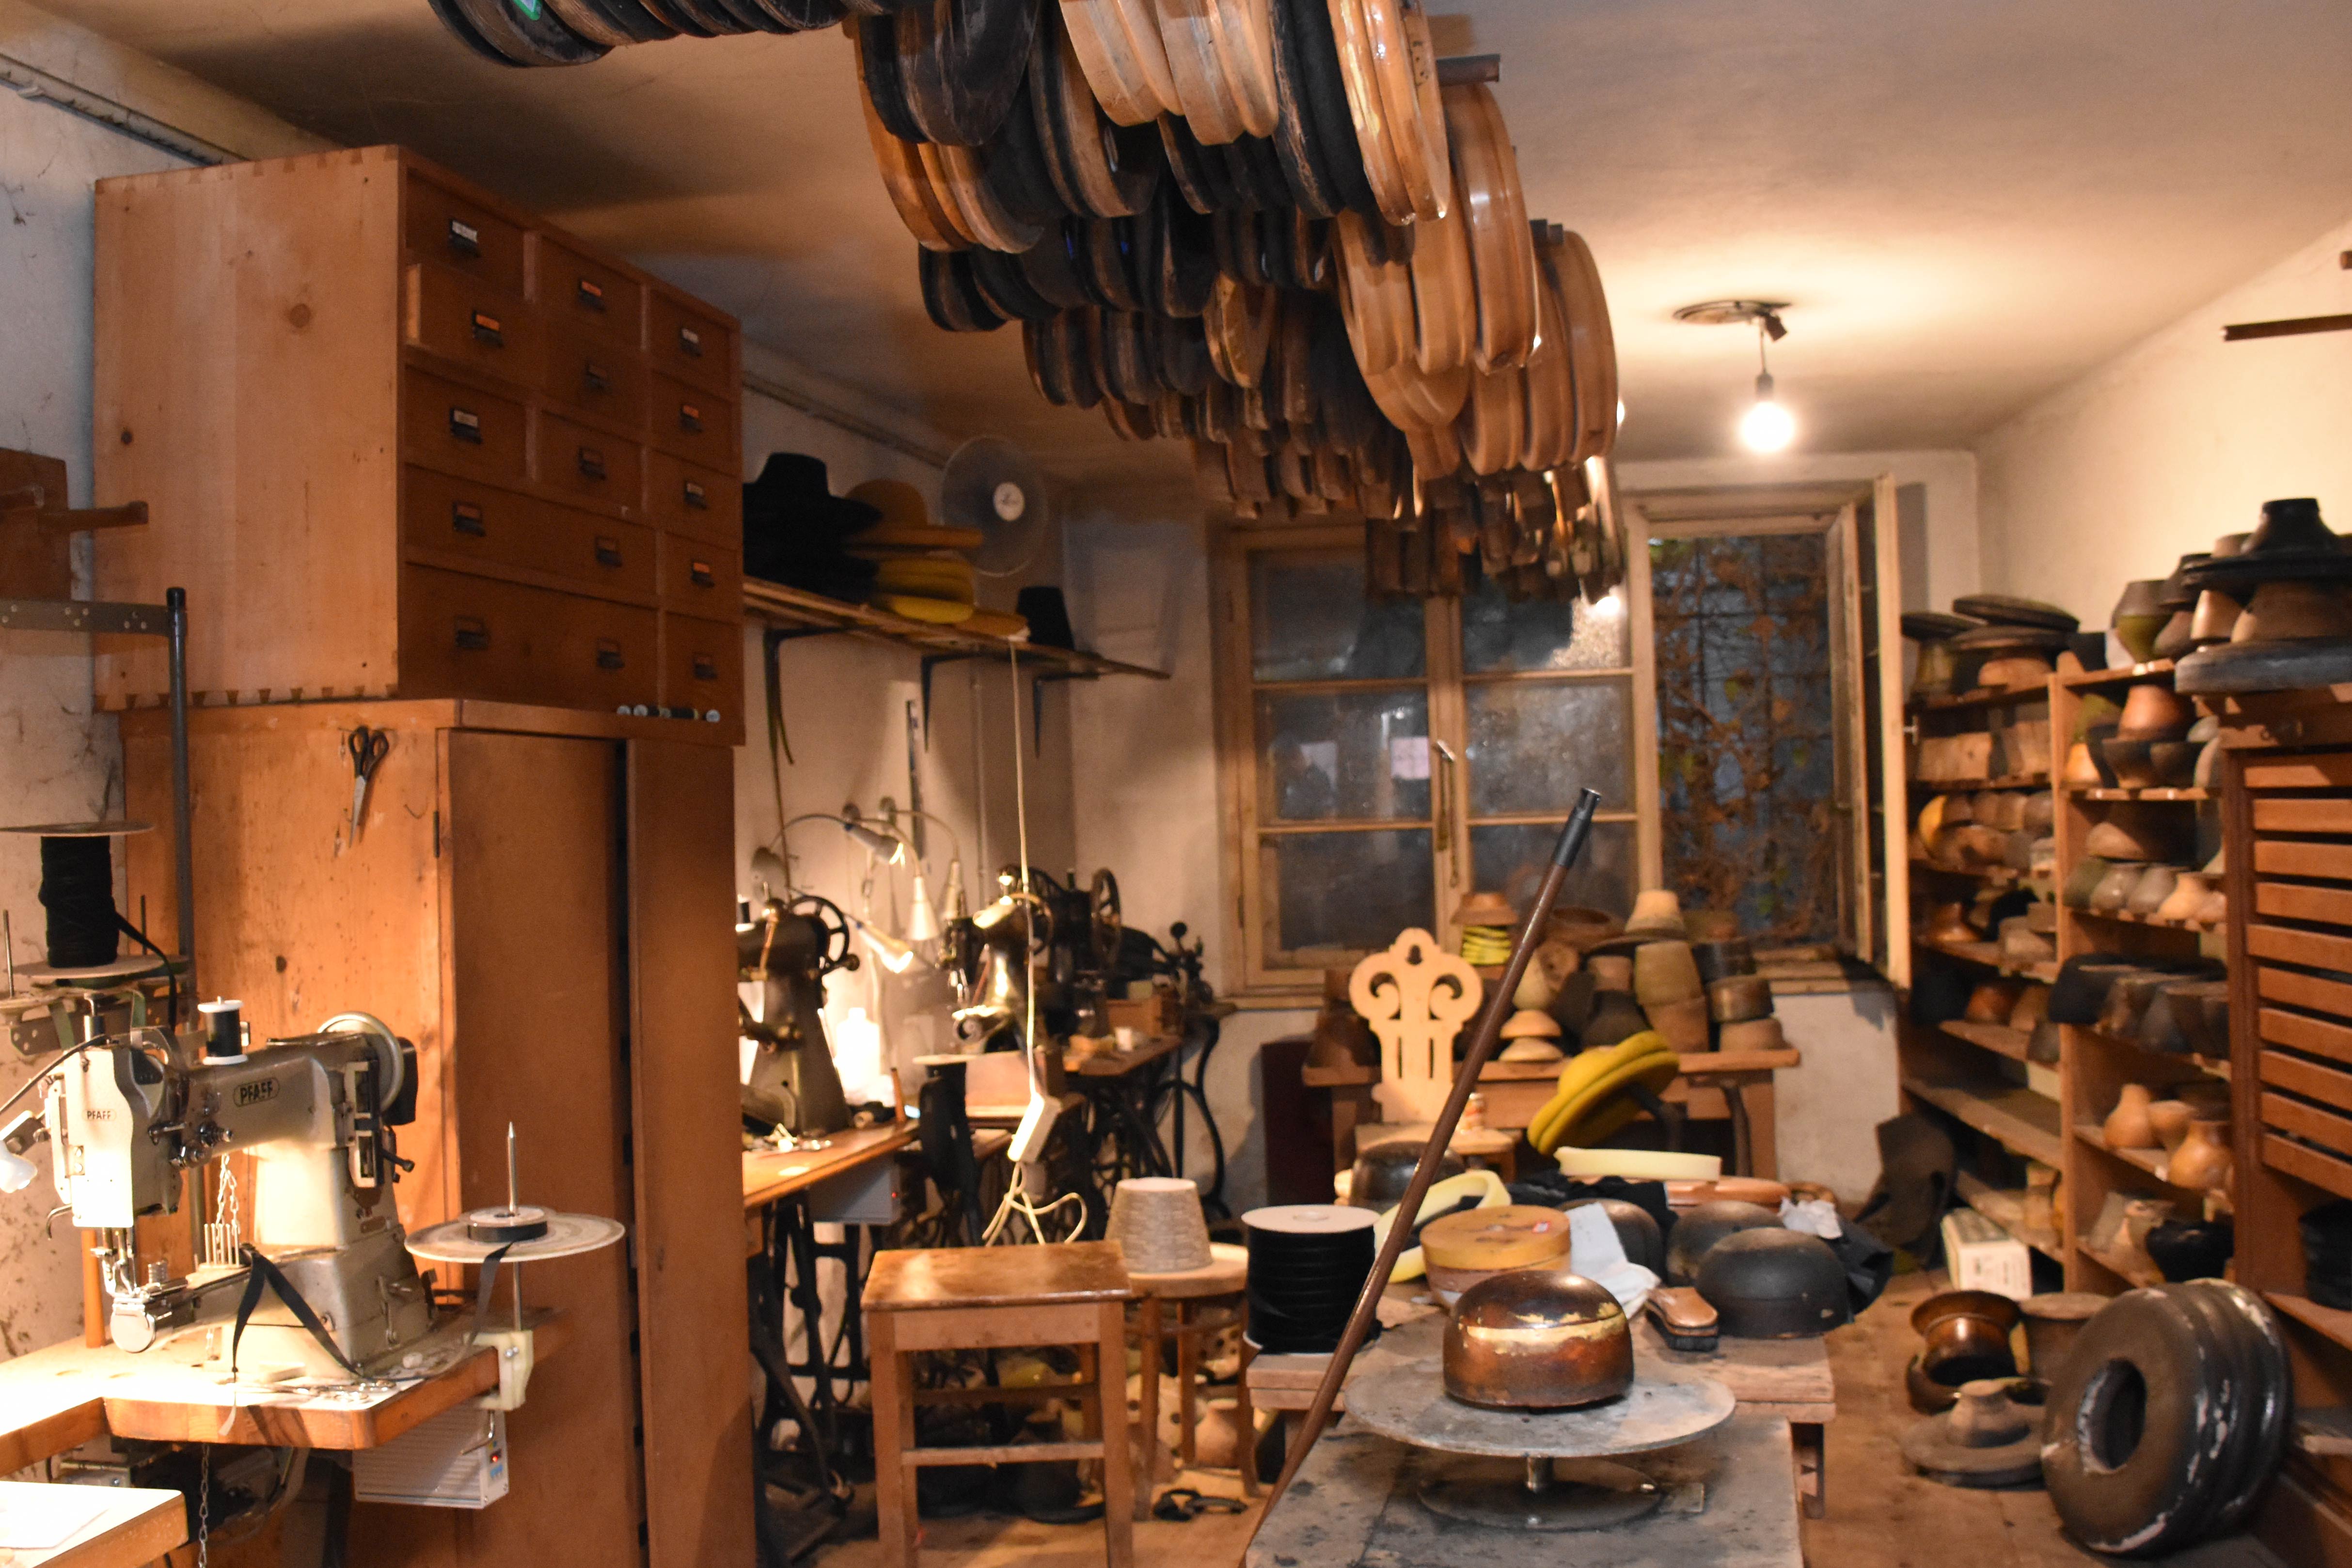 Die Hutmanufaktur in der Innsbrucker Altstadt ist ein optisch-nostalgisches Highlight: abgenutzte Werktische, Metallregale voll mit Schachteln und Hutformen sowie alte Nähmaschinen.